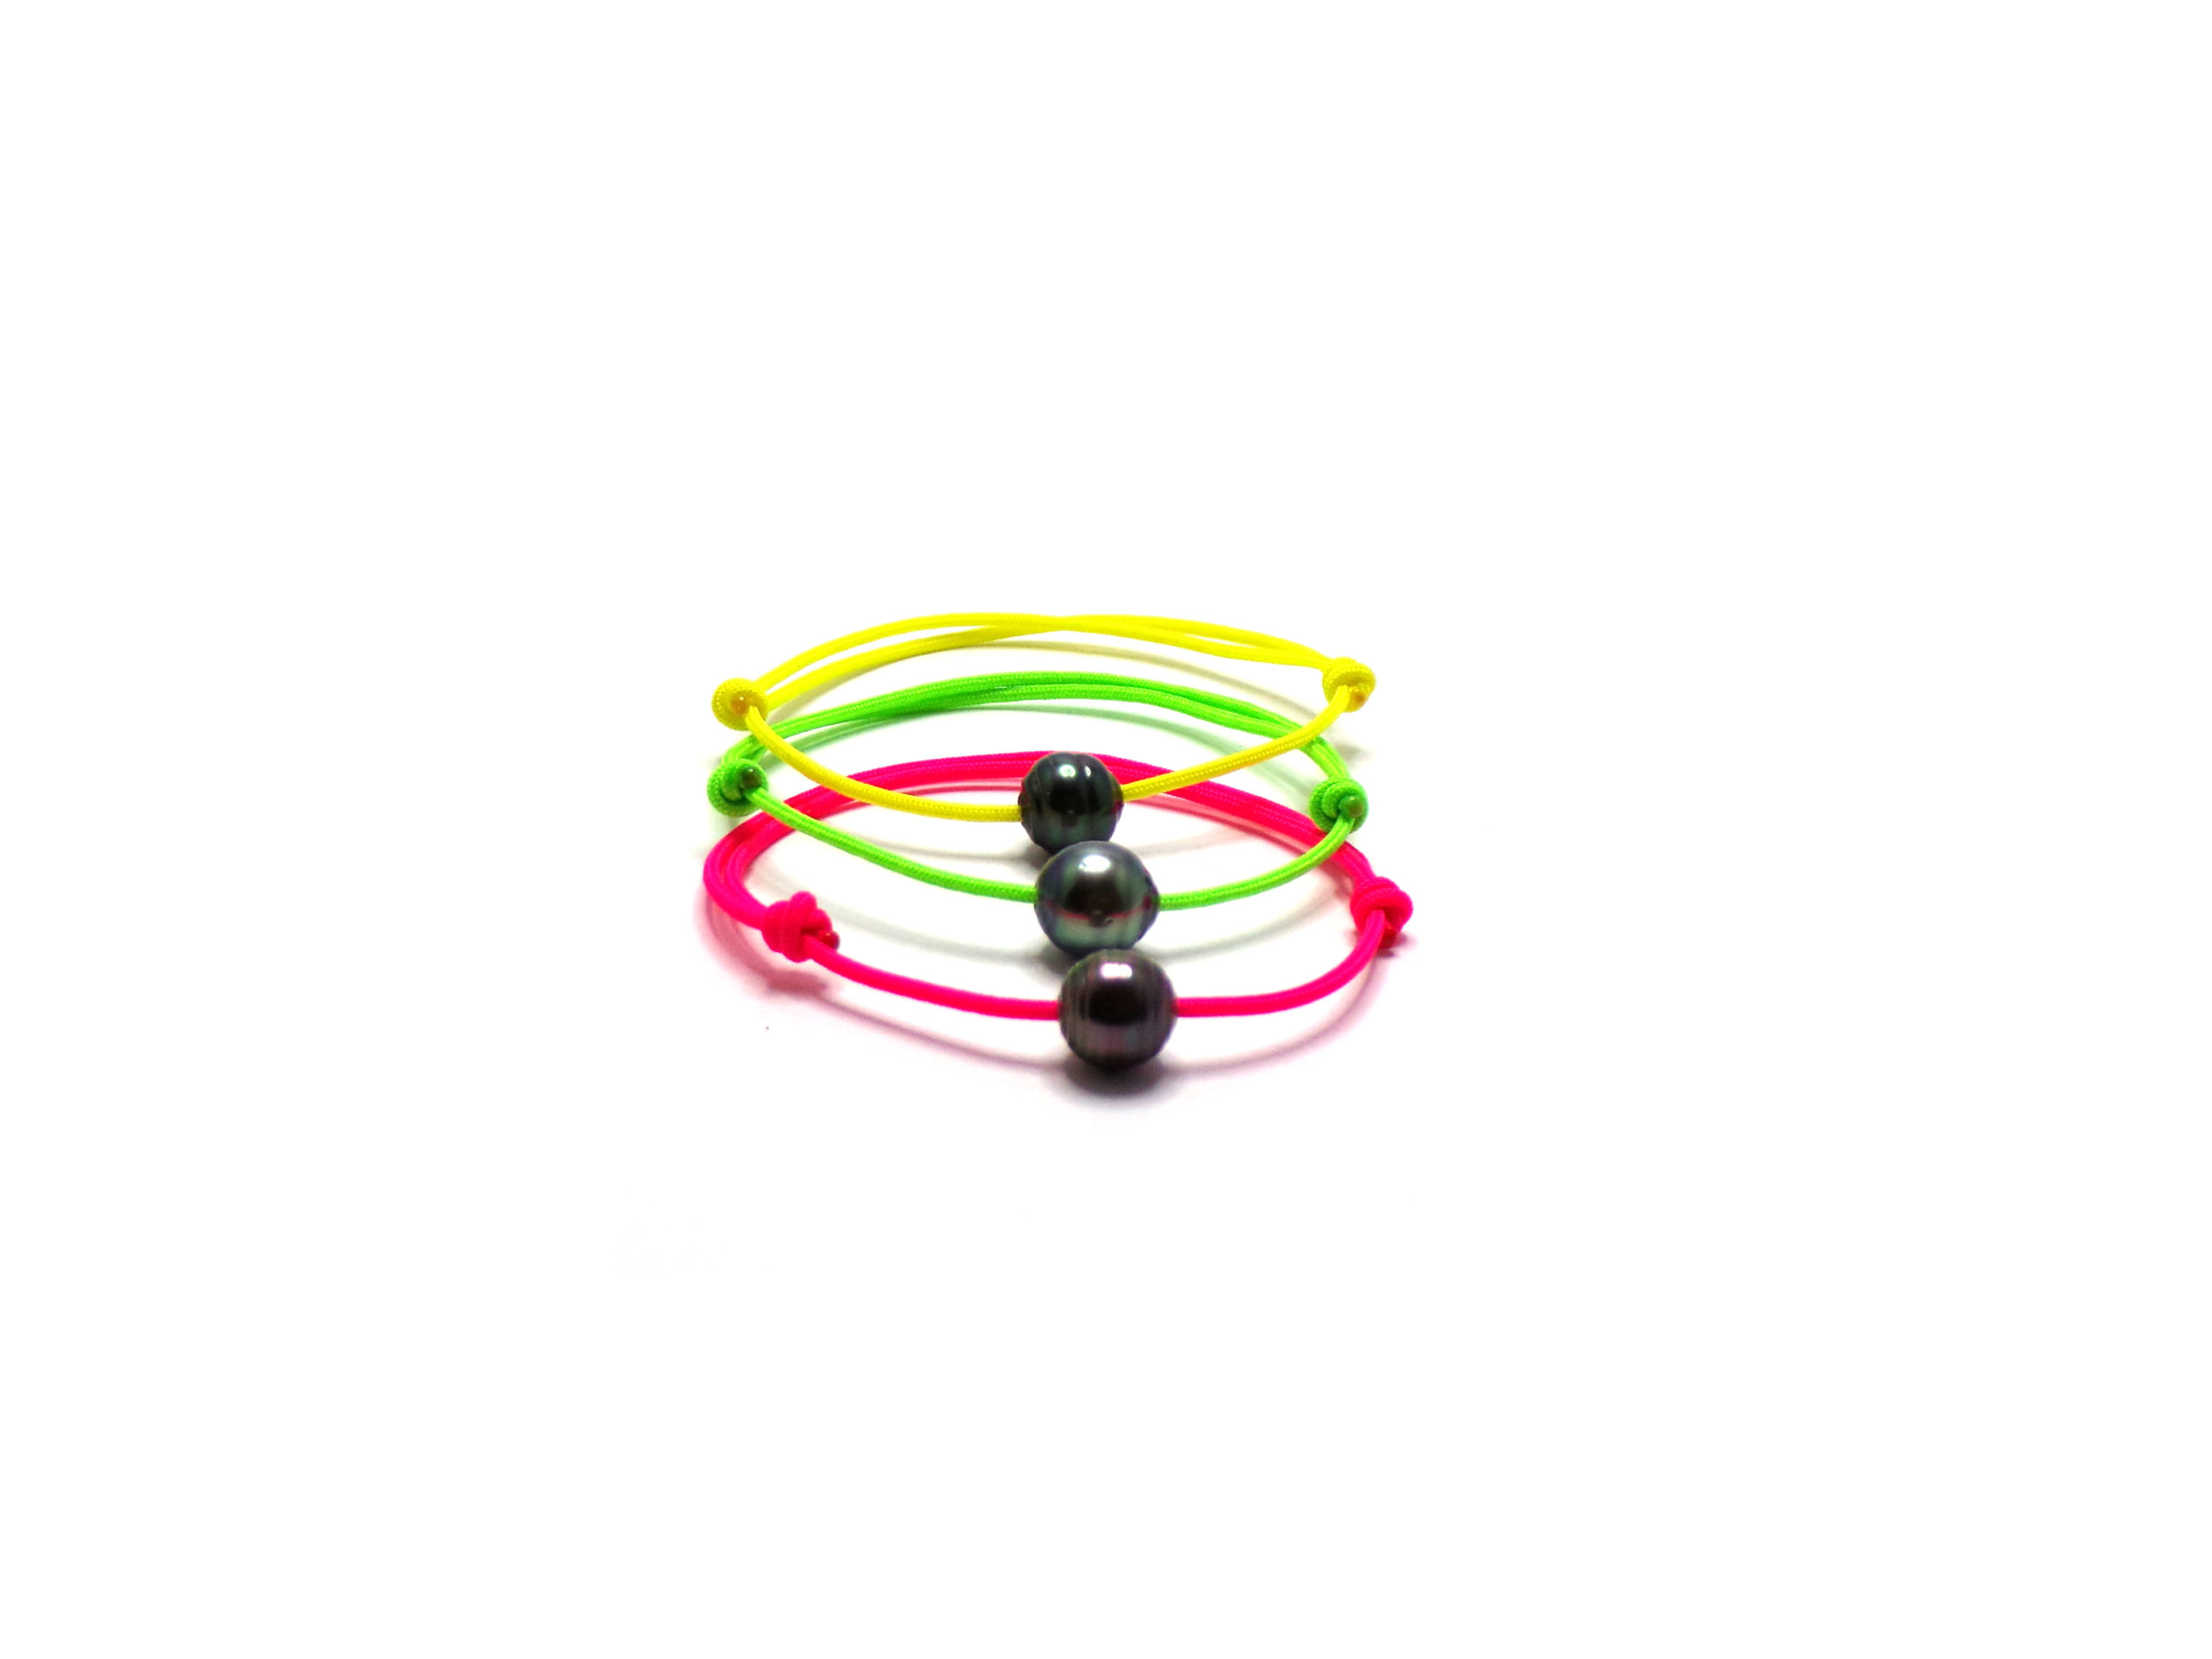 Casewin 100 Pcs Silicone Bracelets Assorted Colors Neon Bracelets Retro Bracelets  Bands for 80s Party Favors for Women Girls Kids(10 Colors) - Walmart.com